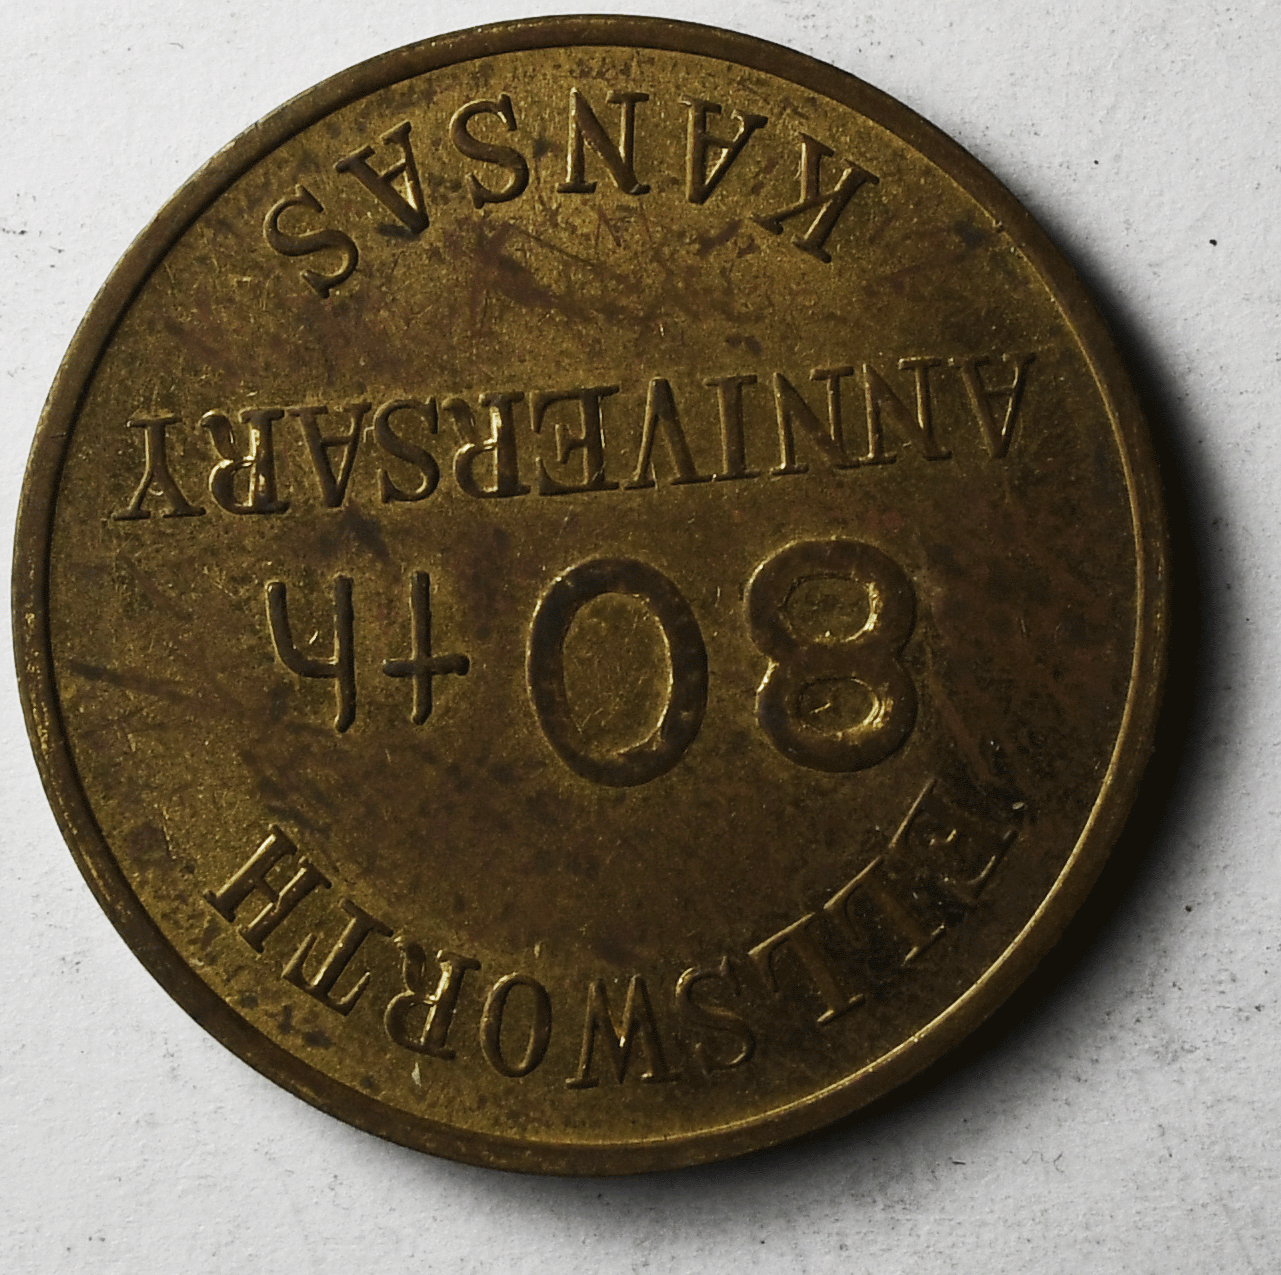 1947 Ellsworth Kansas 80th Anniversary Medal 28mm